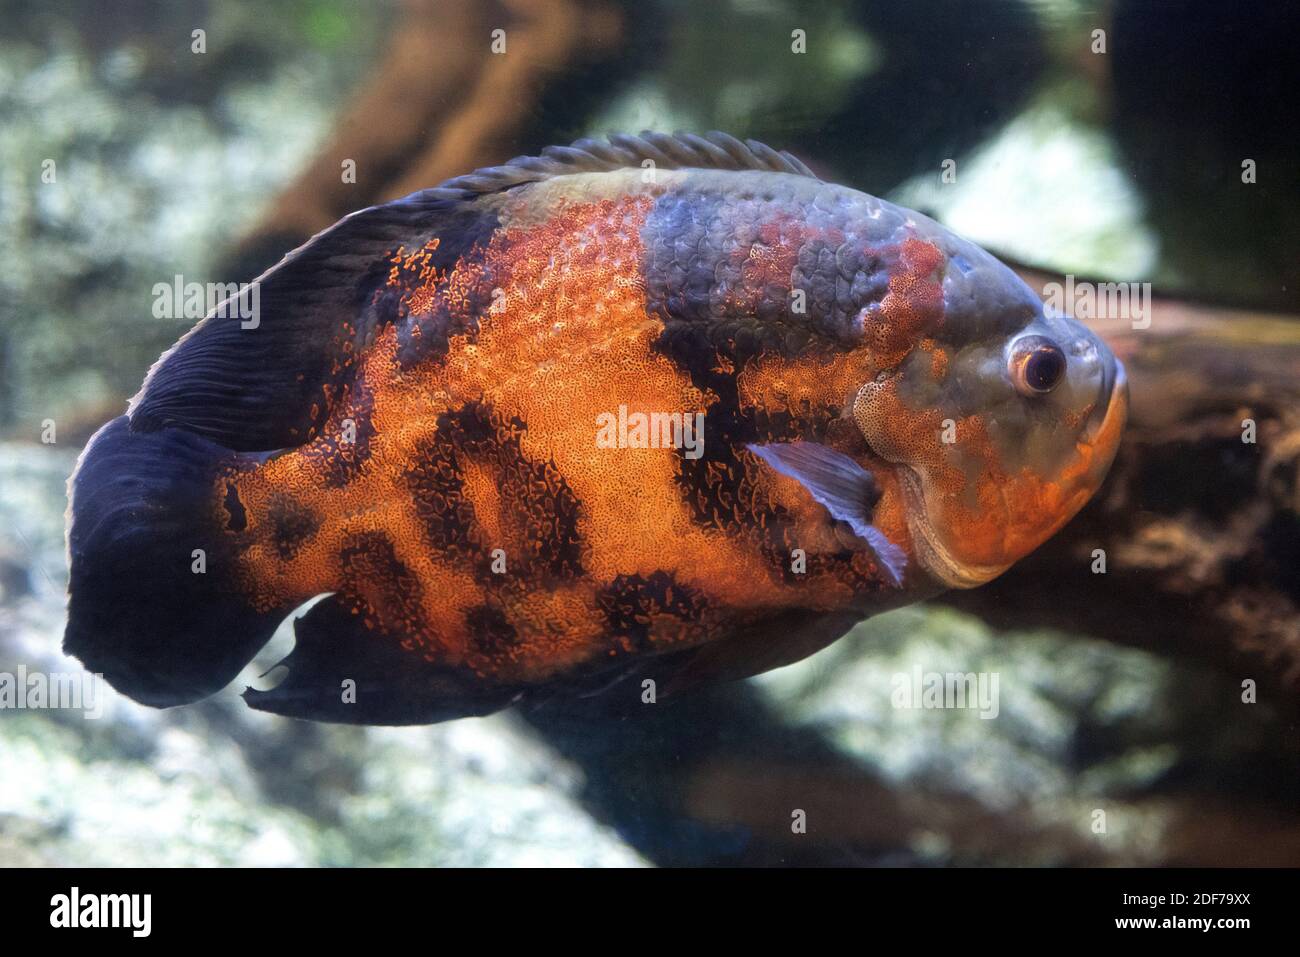 Oscar ou tigre oscar (Astronotus ocellatus) est un poisson d'eau douce originaire du bassin de l'Amazone. Banque D'Images